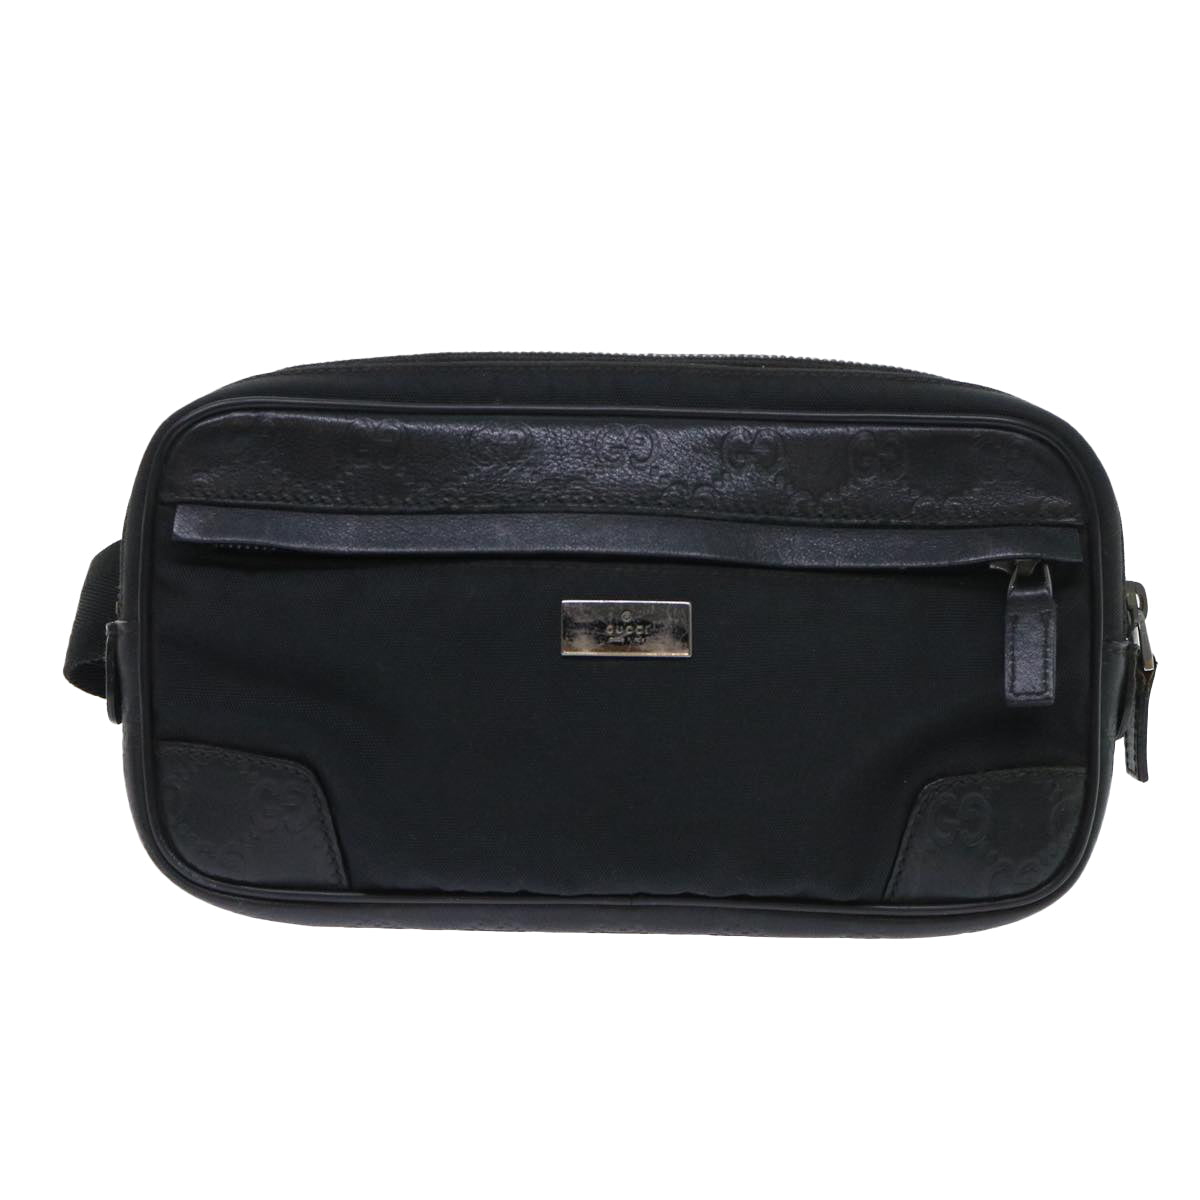 GUCCI Guccissima Waist bag Nylon Leather Black 162417 Auth tb905 - 0